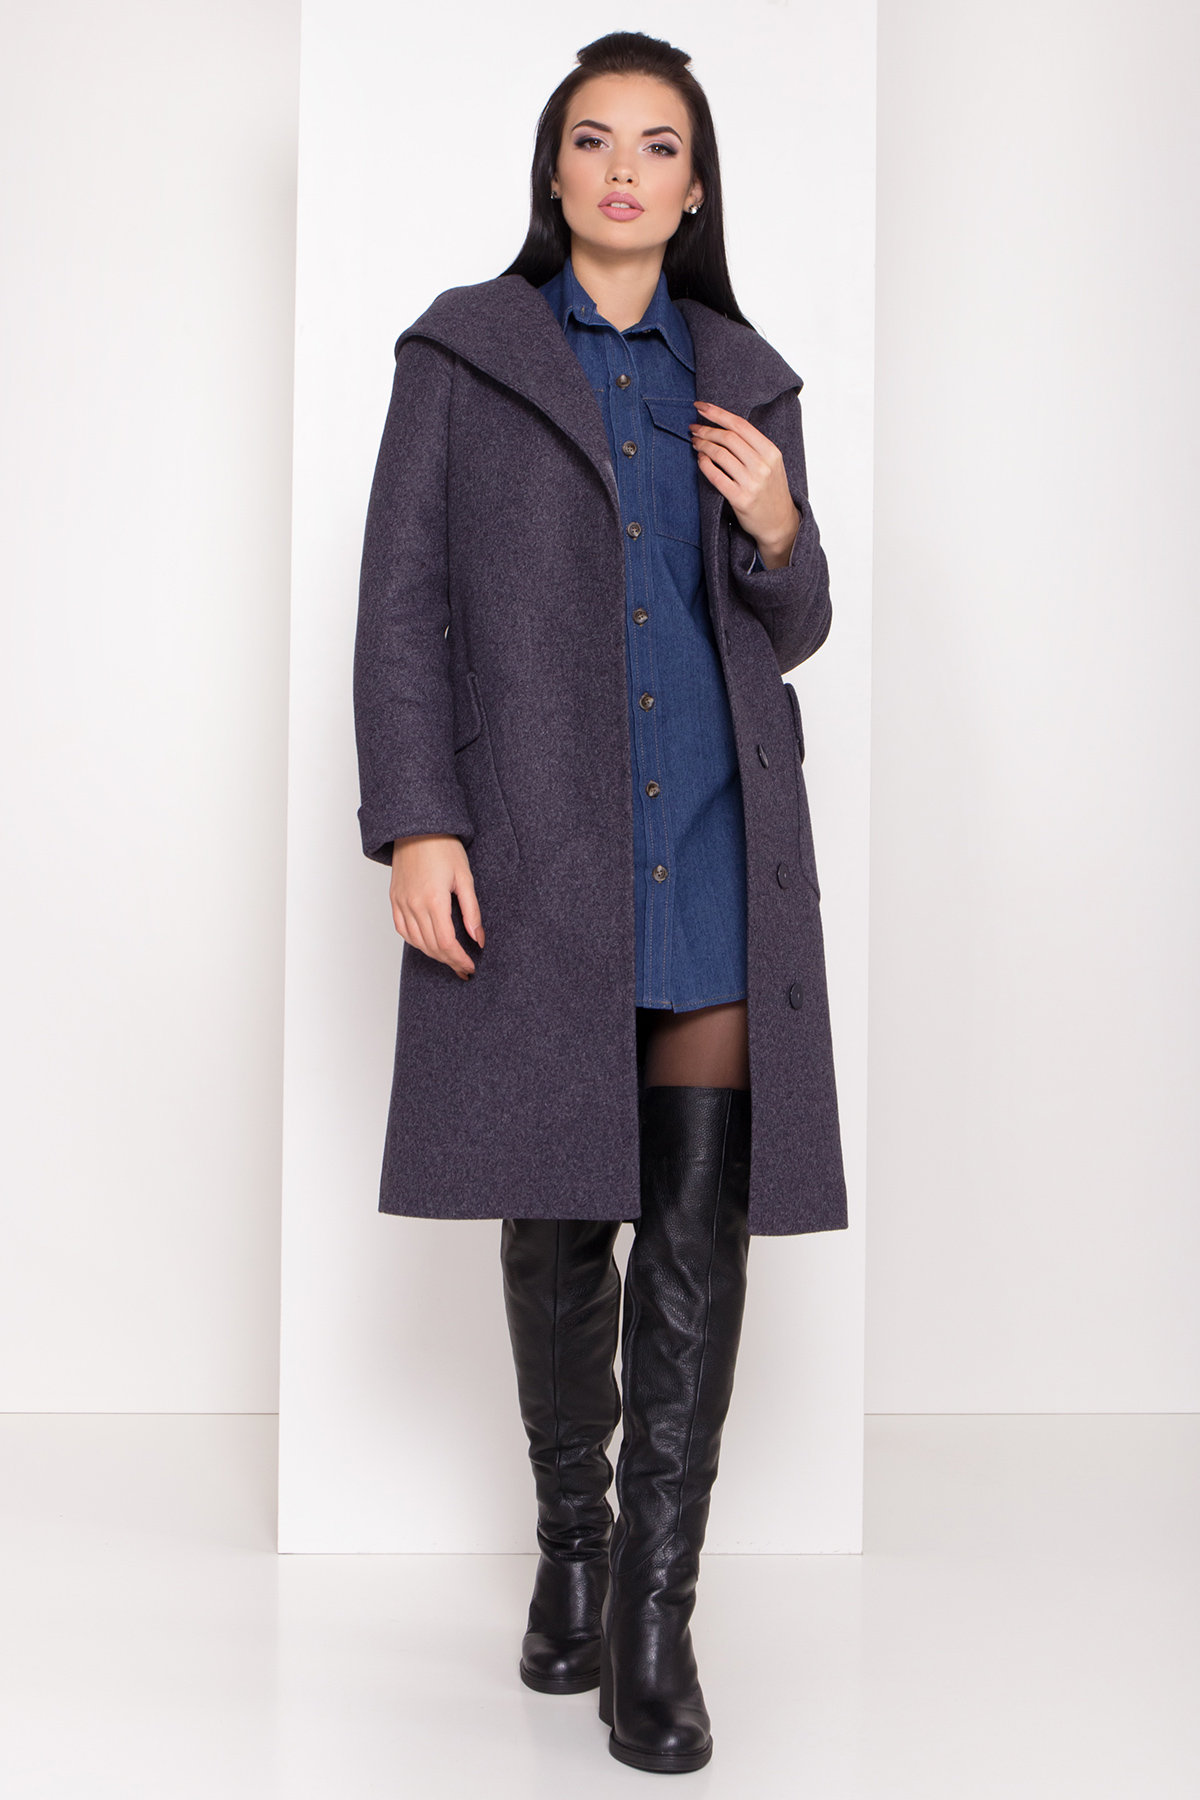 Женское пальто зима с накладными карманами Анджи 8301 АРТ. 44427 Цвет: т. синий 543 - фото 1, интернет магазин tm-modus.ru